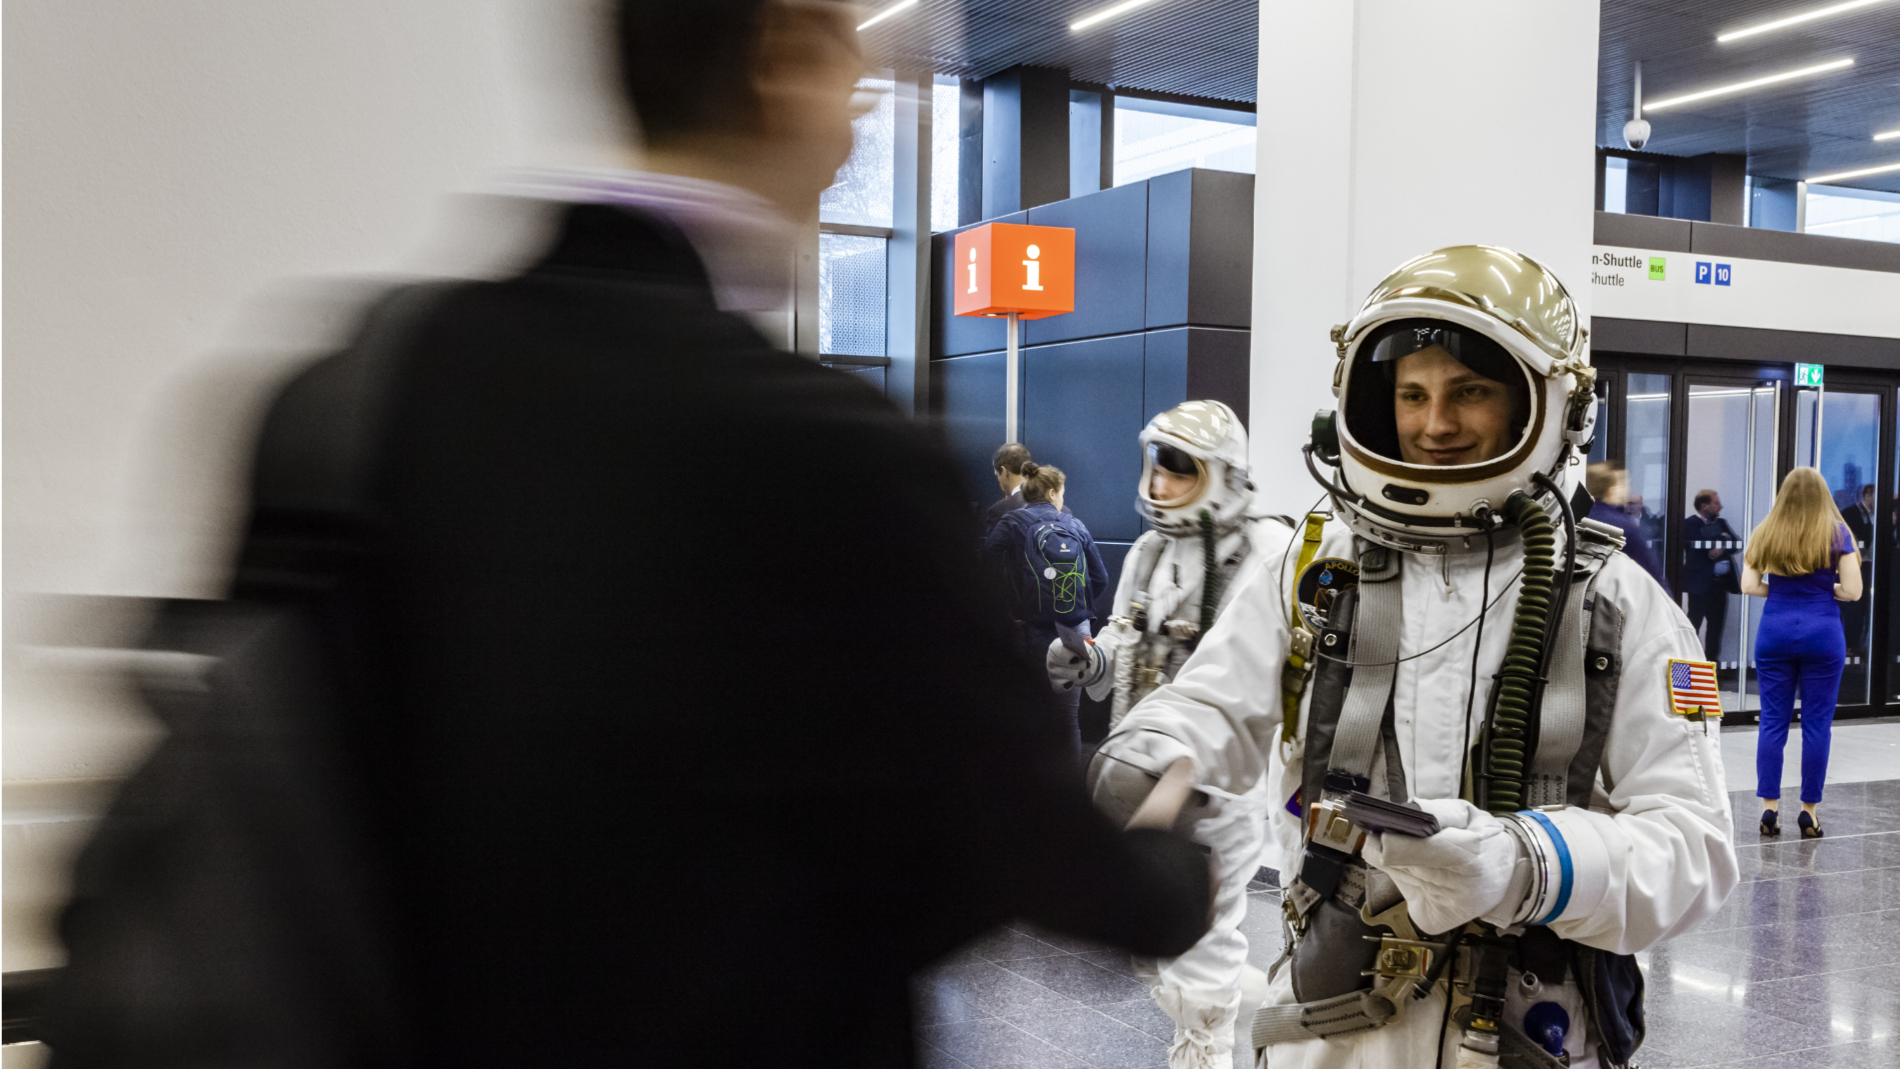 Promotion: Hostess im Astronauten-Anzug auf der Messe Frankfurt